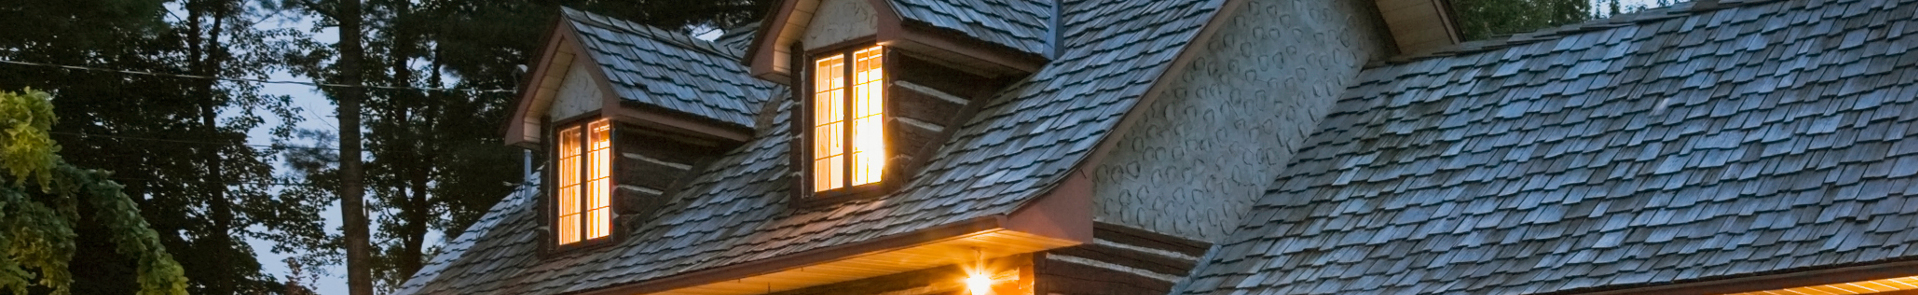 rivestimento di tetti dall'esterno